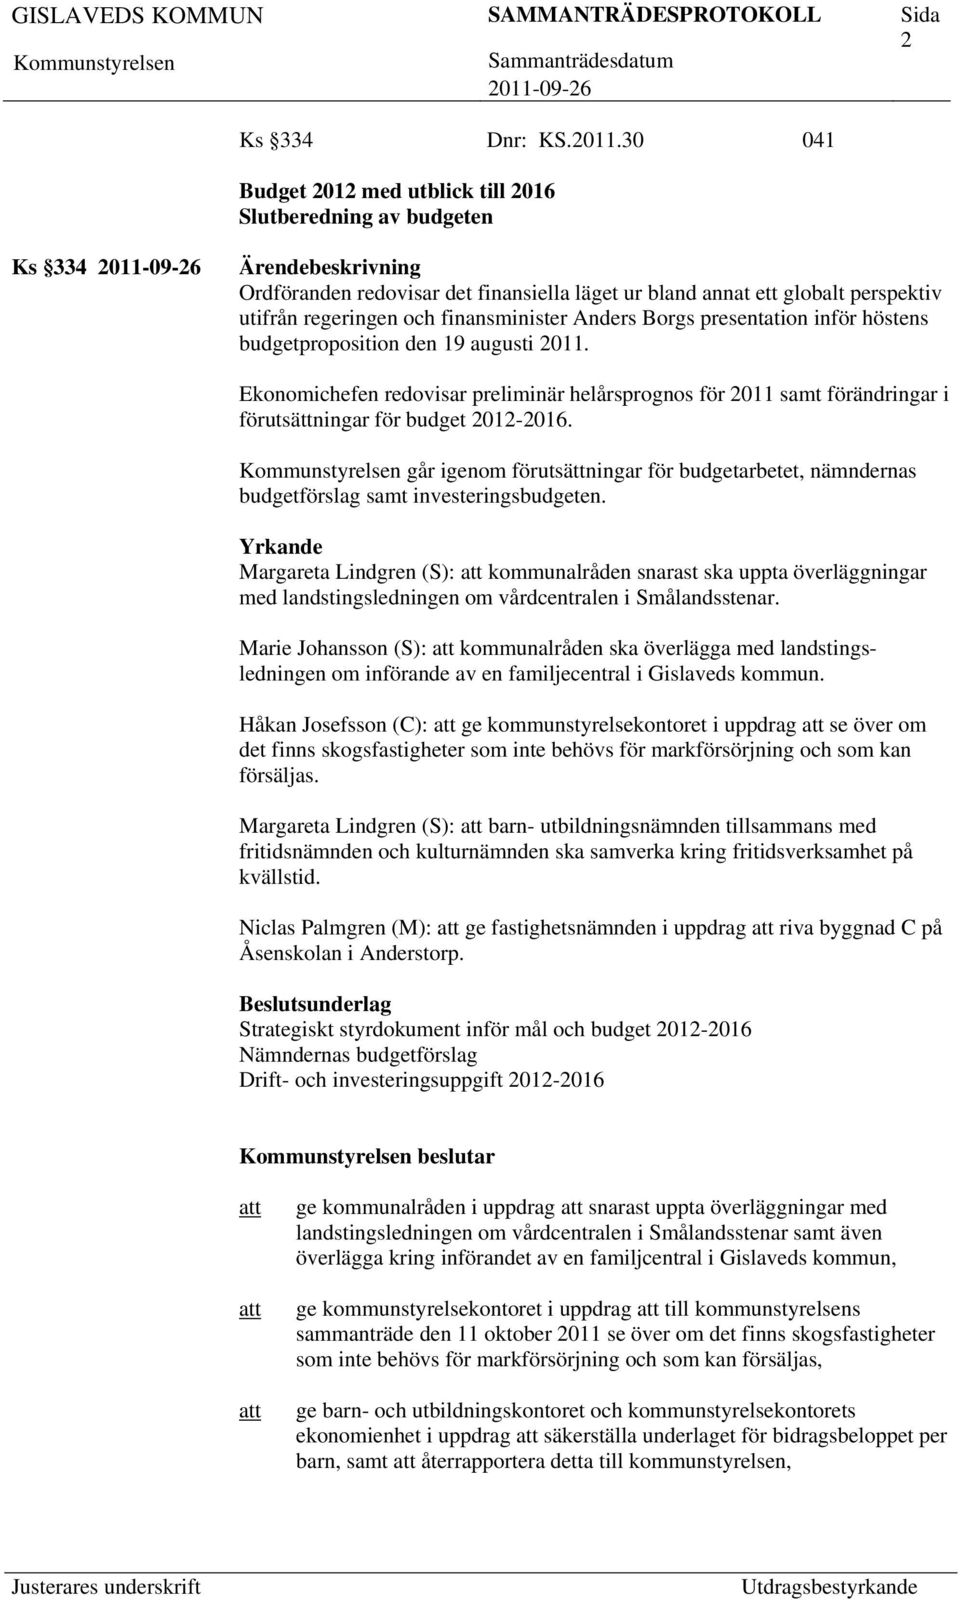 Anders Borgs presentation inför höstens budgetproposition den 19 augusti 2011. Ekonomichefen redovisar preliminär helårsprognos för 2011 samt förändringar i förutsättningar för budget 2012-2016.